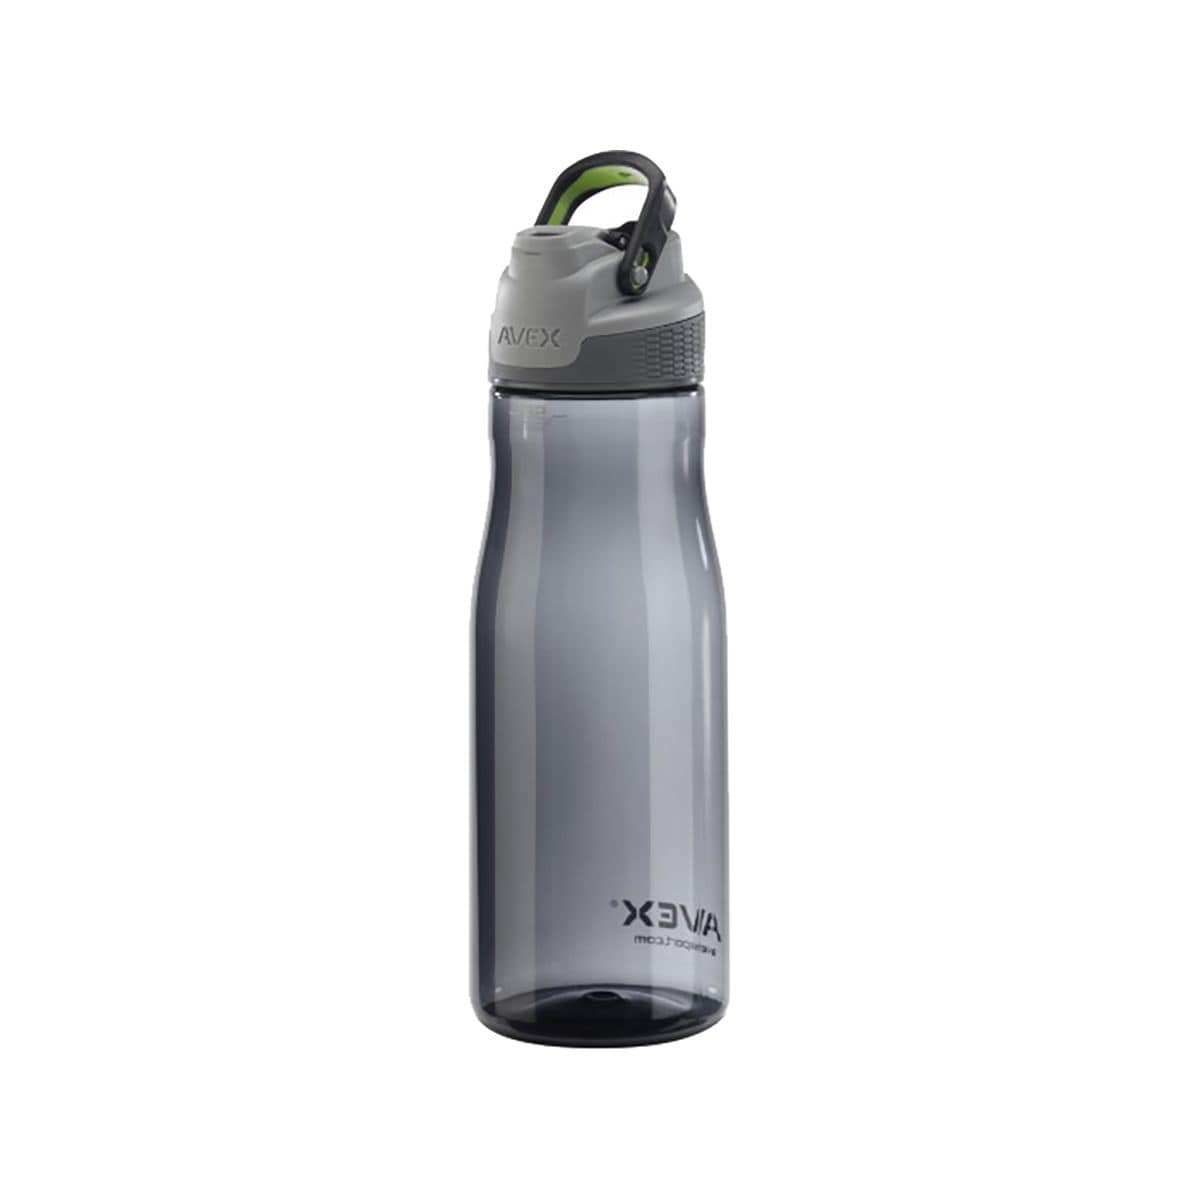 Used Avex FreeFlow Stainless-Steel Vacuum Water Bottle - 24 fl. oz